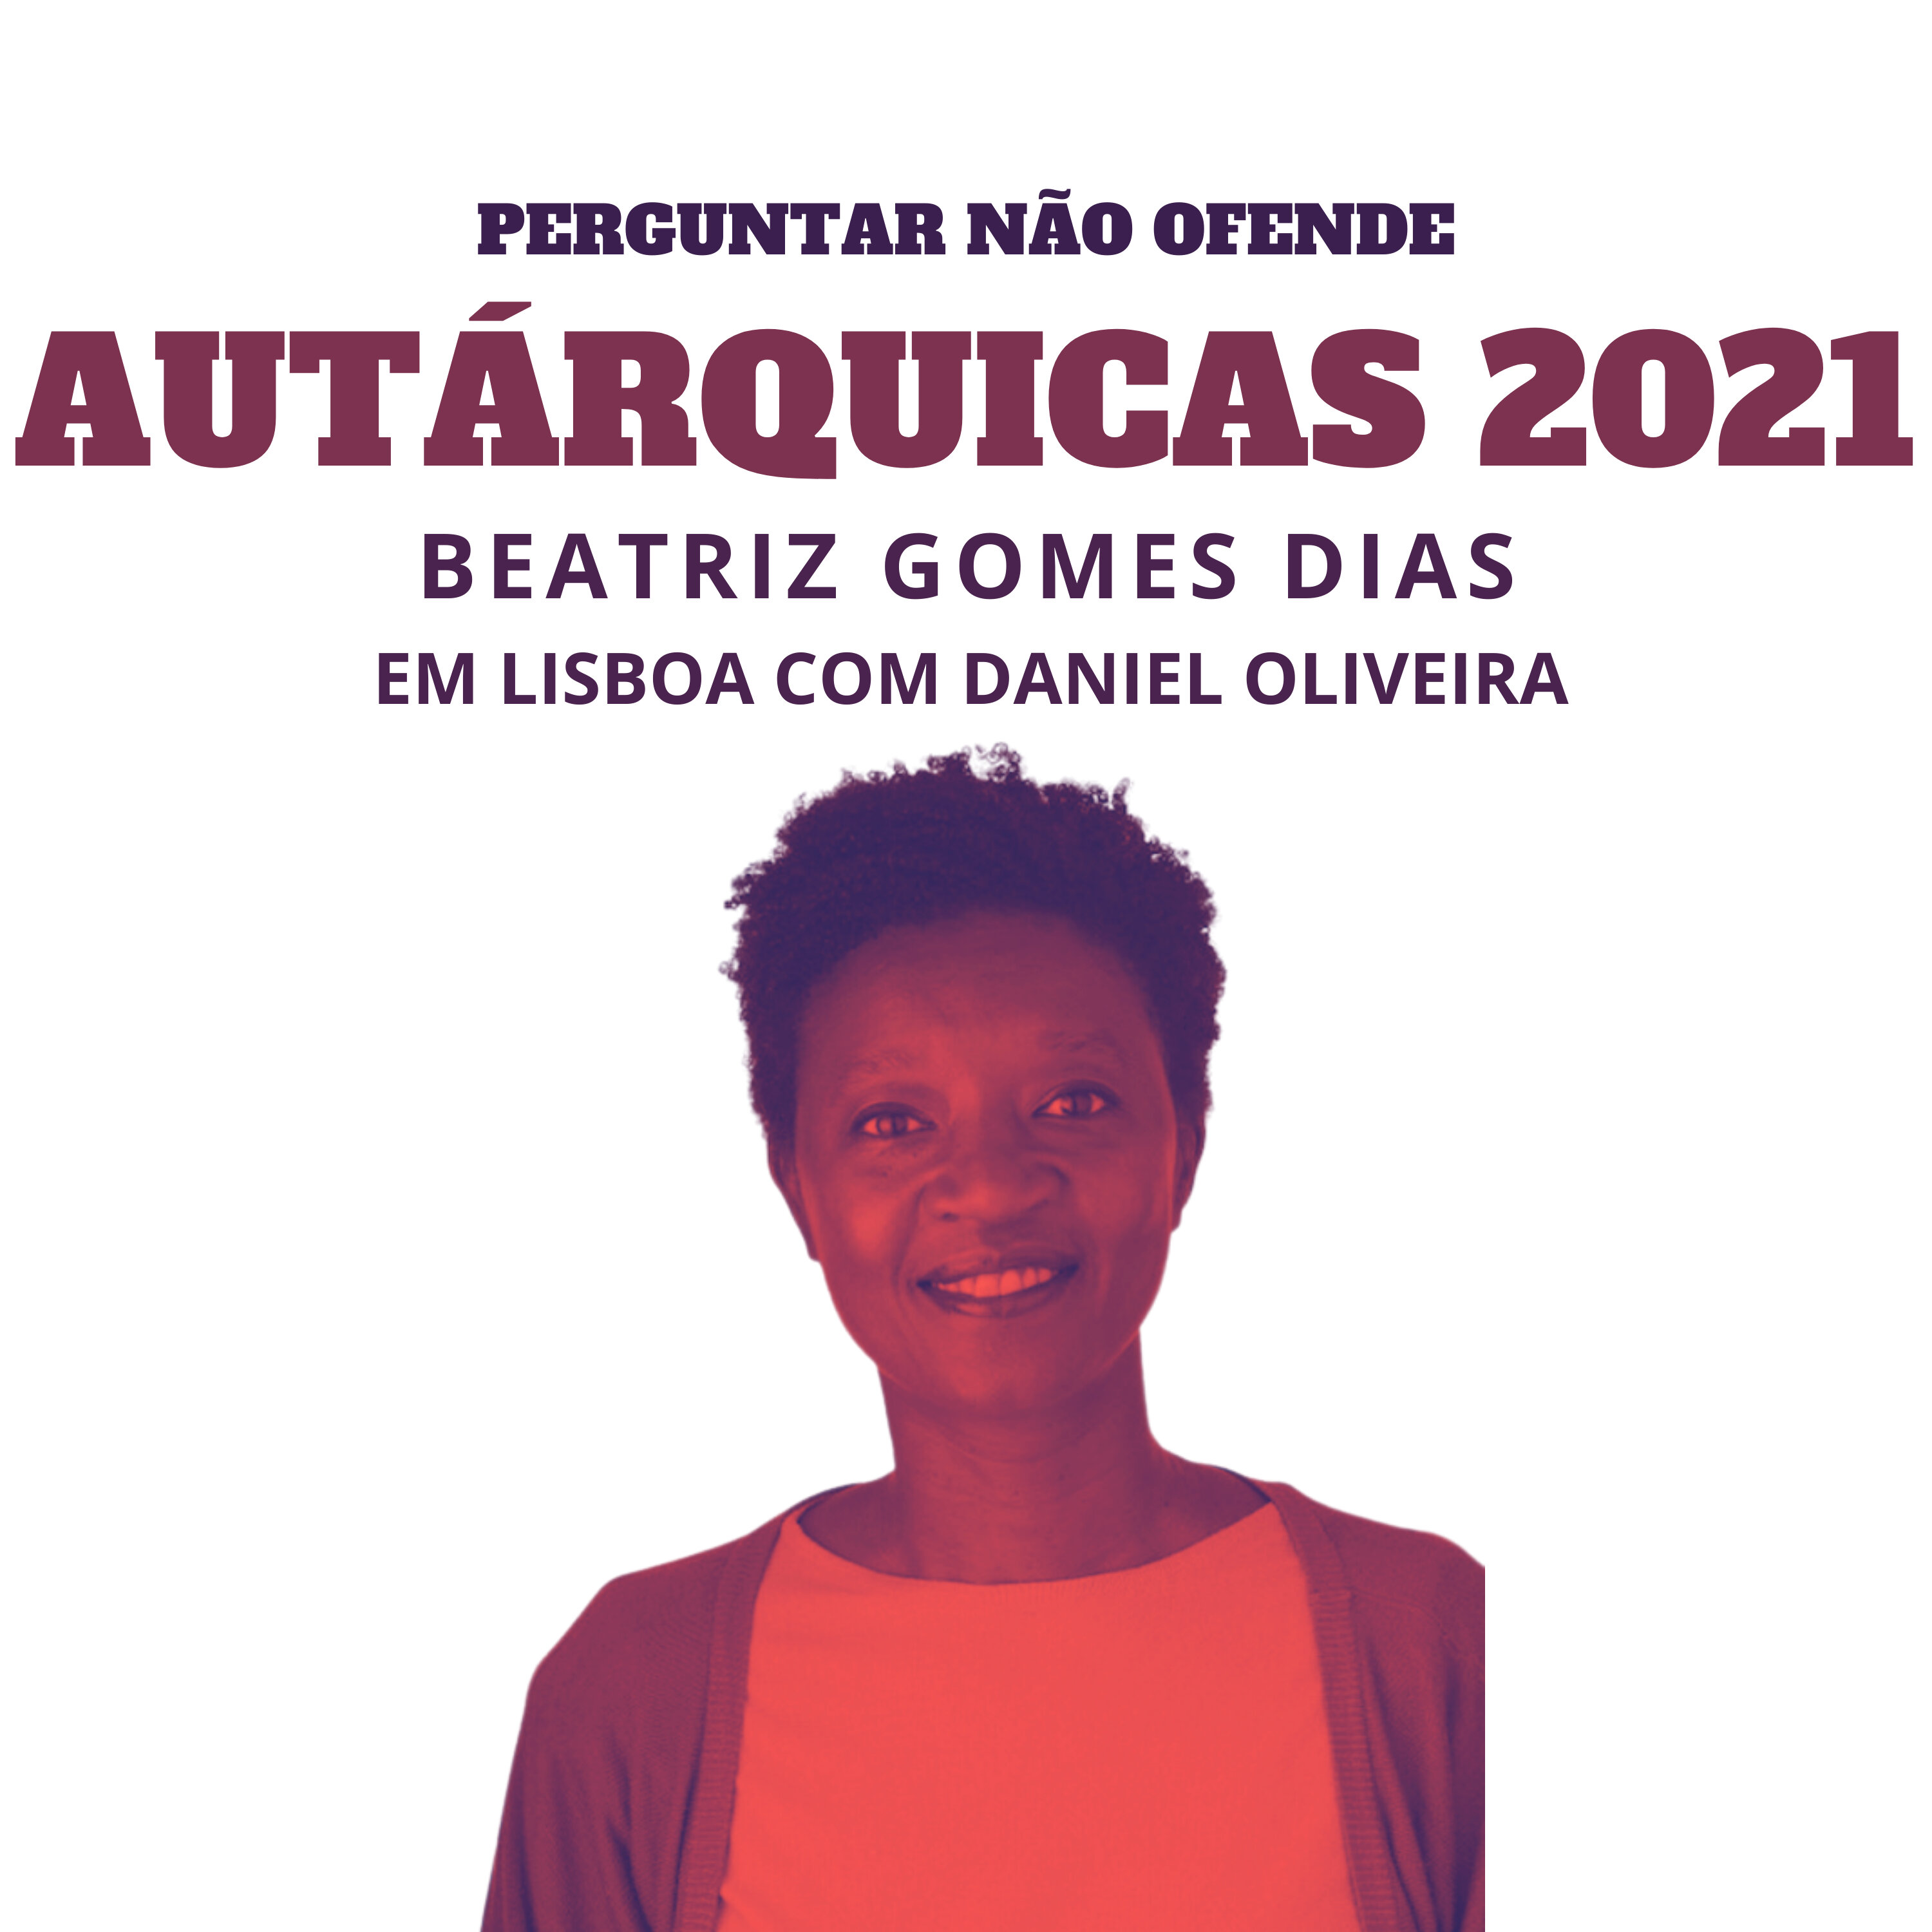 Autárquicas 2021: Beatriz Gomes Dias conversa com Daniel Oliveira, em Lisboa